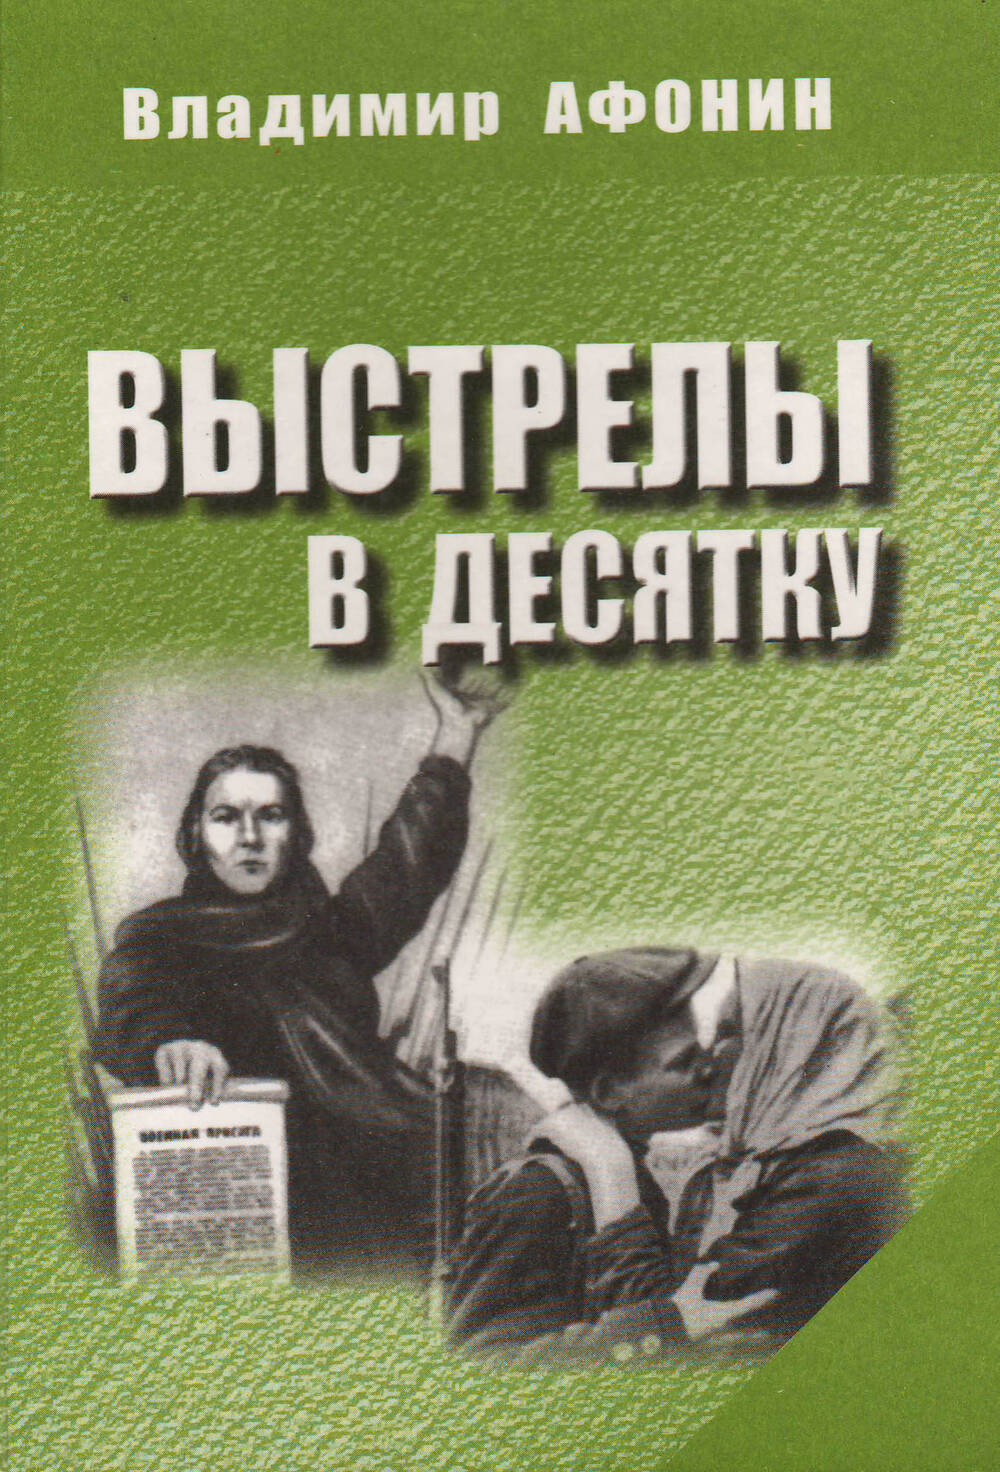 Владимир Афонин. Книга Выстрелы в десятку. Орел, 2009 года.